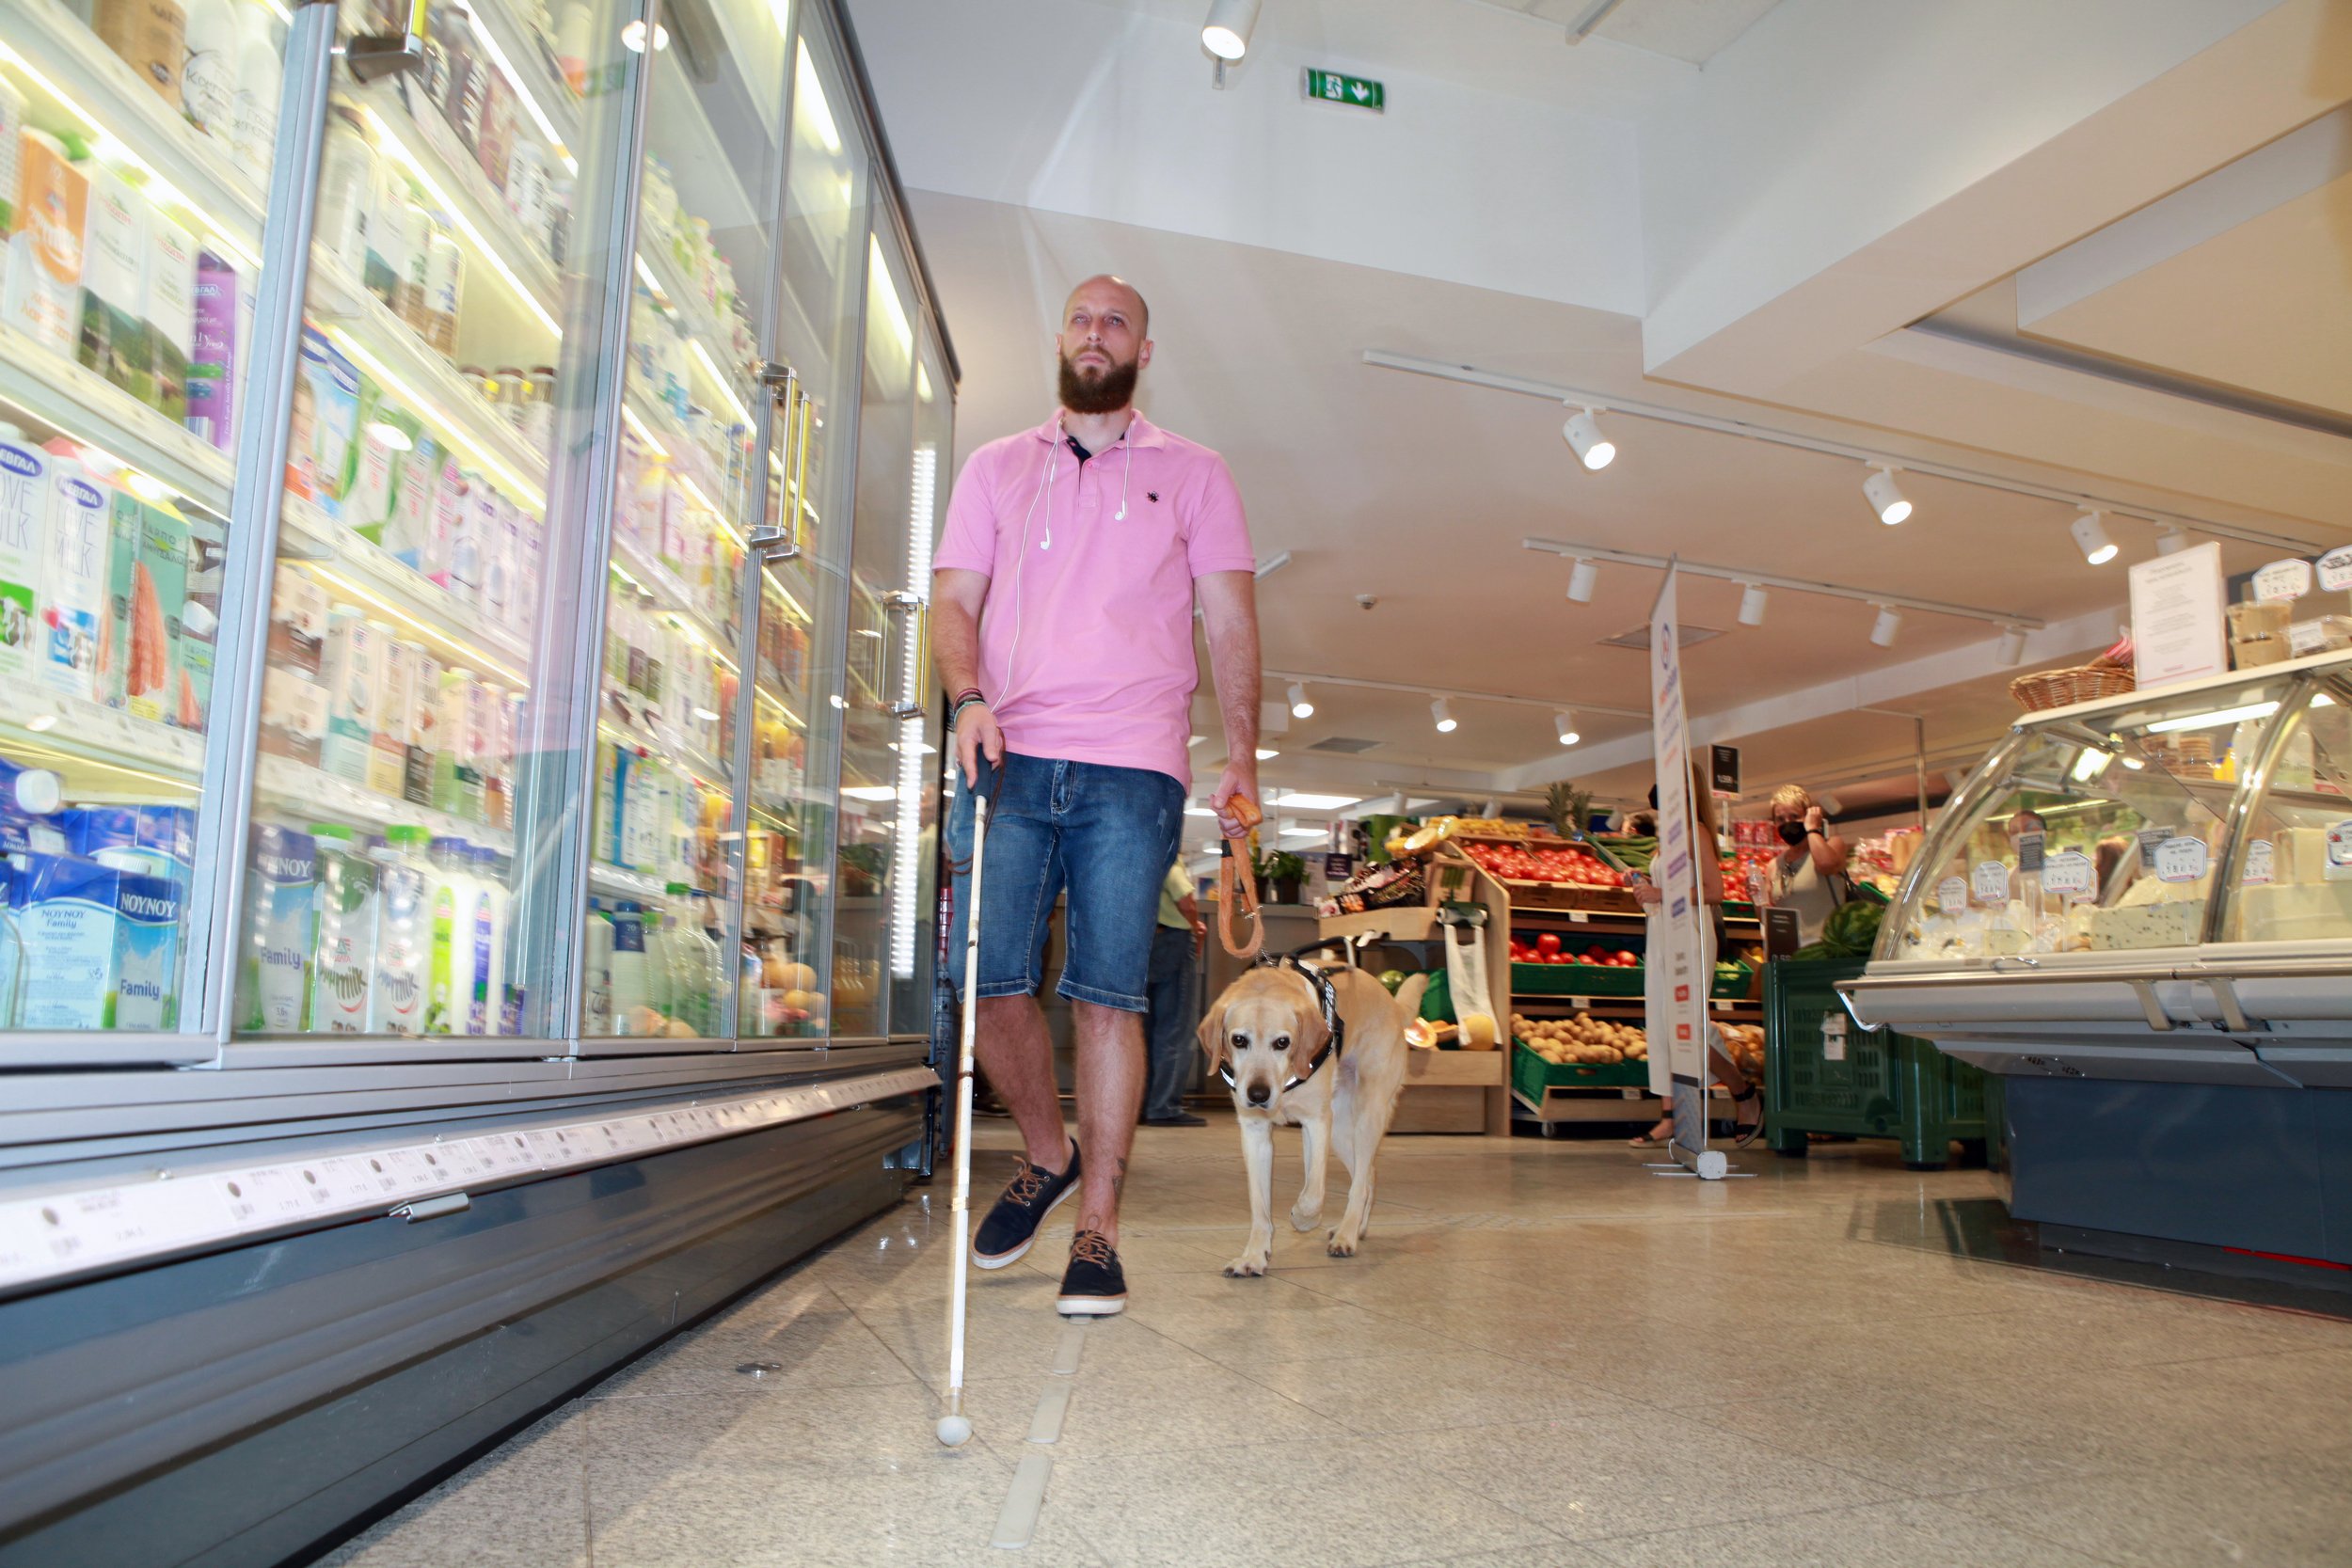 Θεσσαλονίκη: Το πρώτο σούπερ μάρκετ για άτομα με οπτική αναπηρία έκανε τον κόσμο λίγο πιο δίκαιο